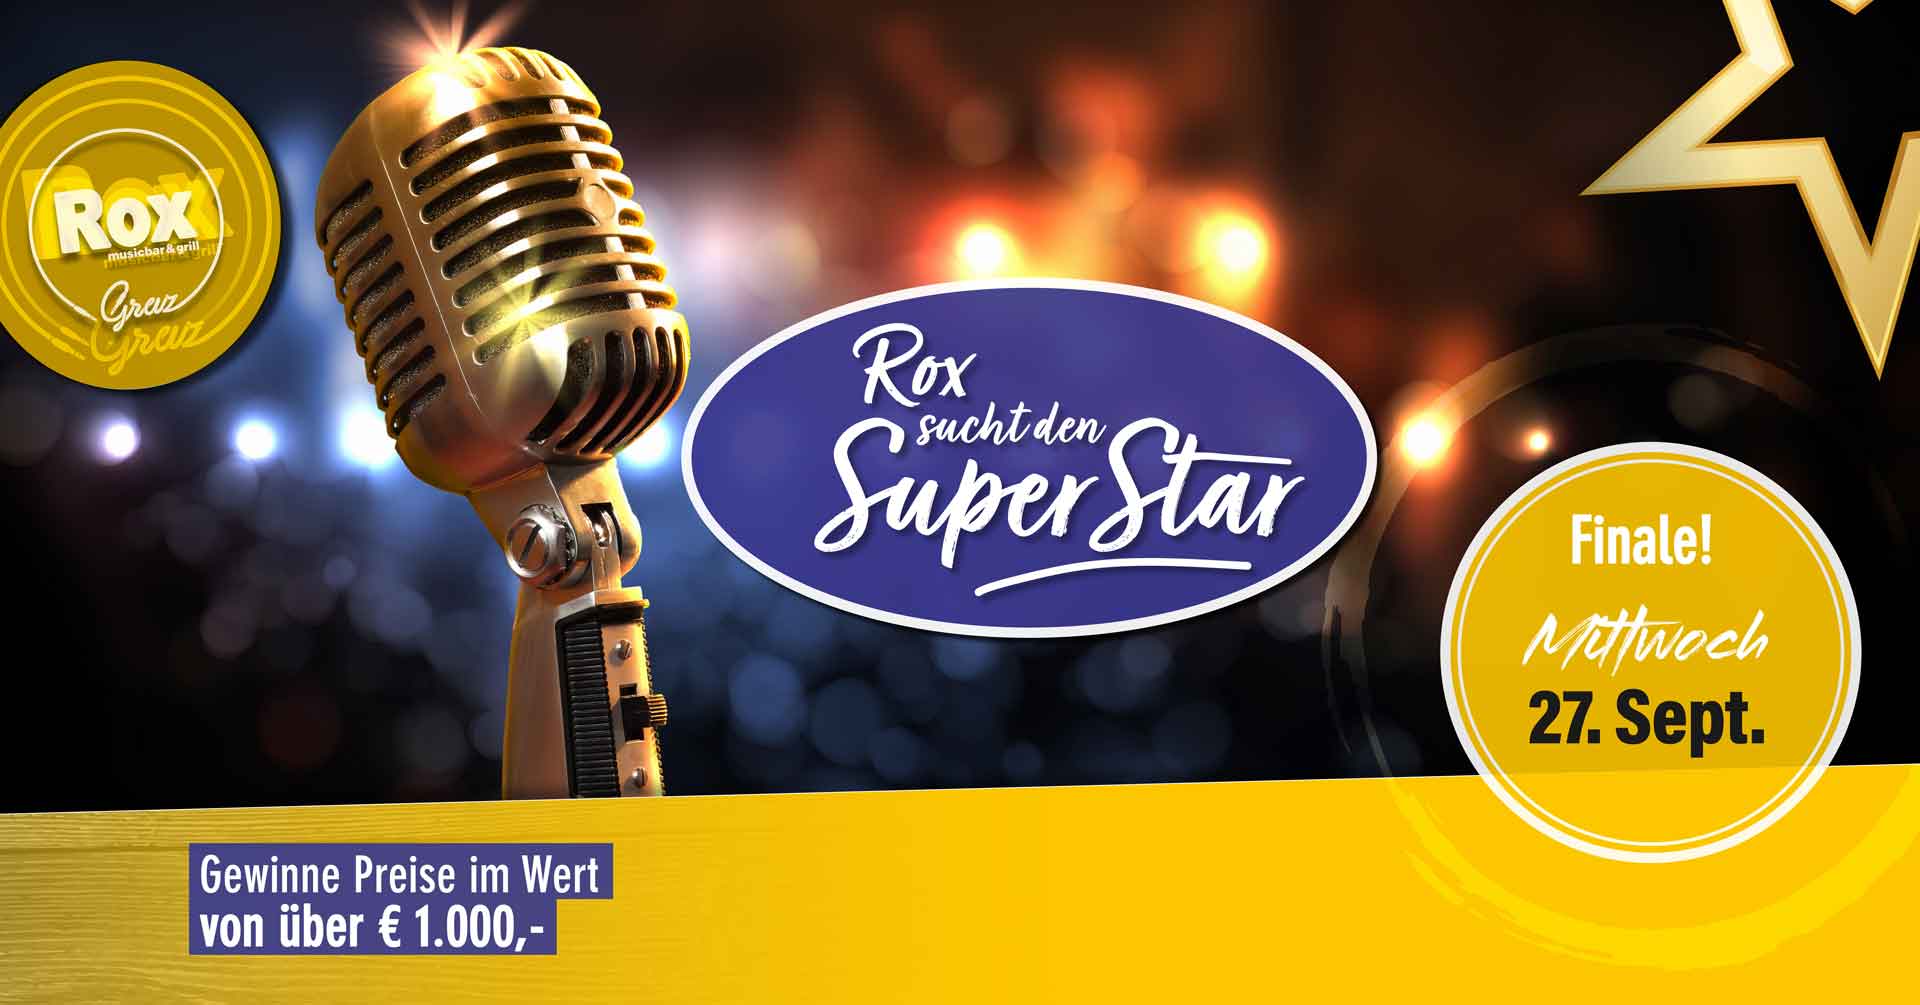 Rox sucht den Karaoke Superstar - Das Finale